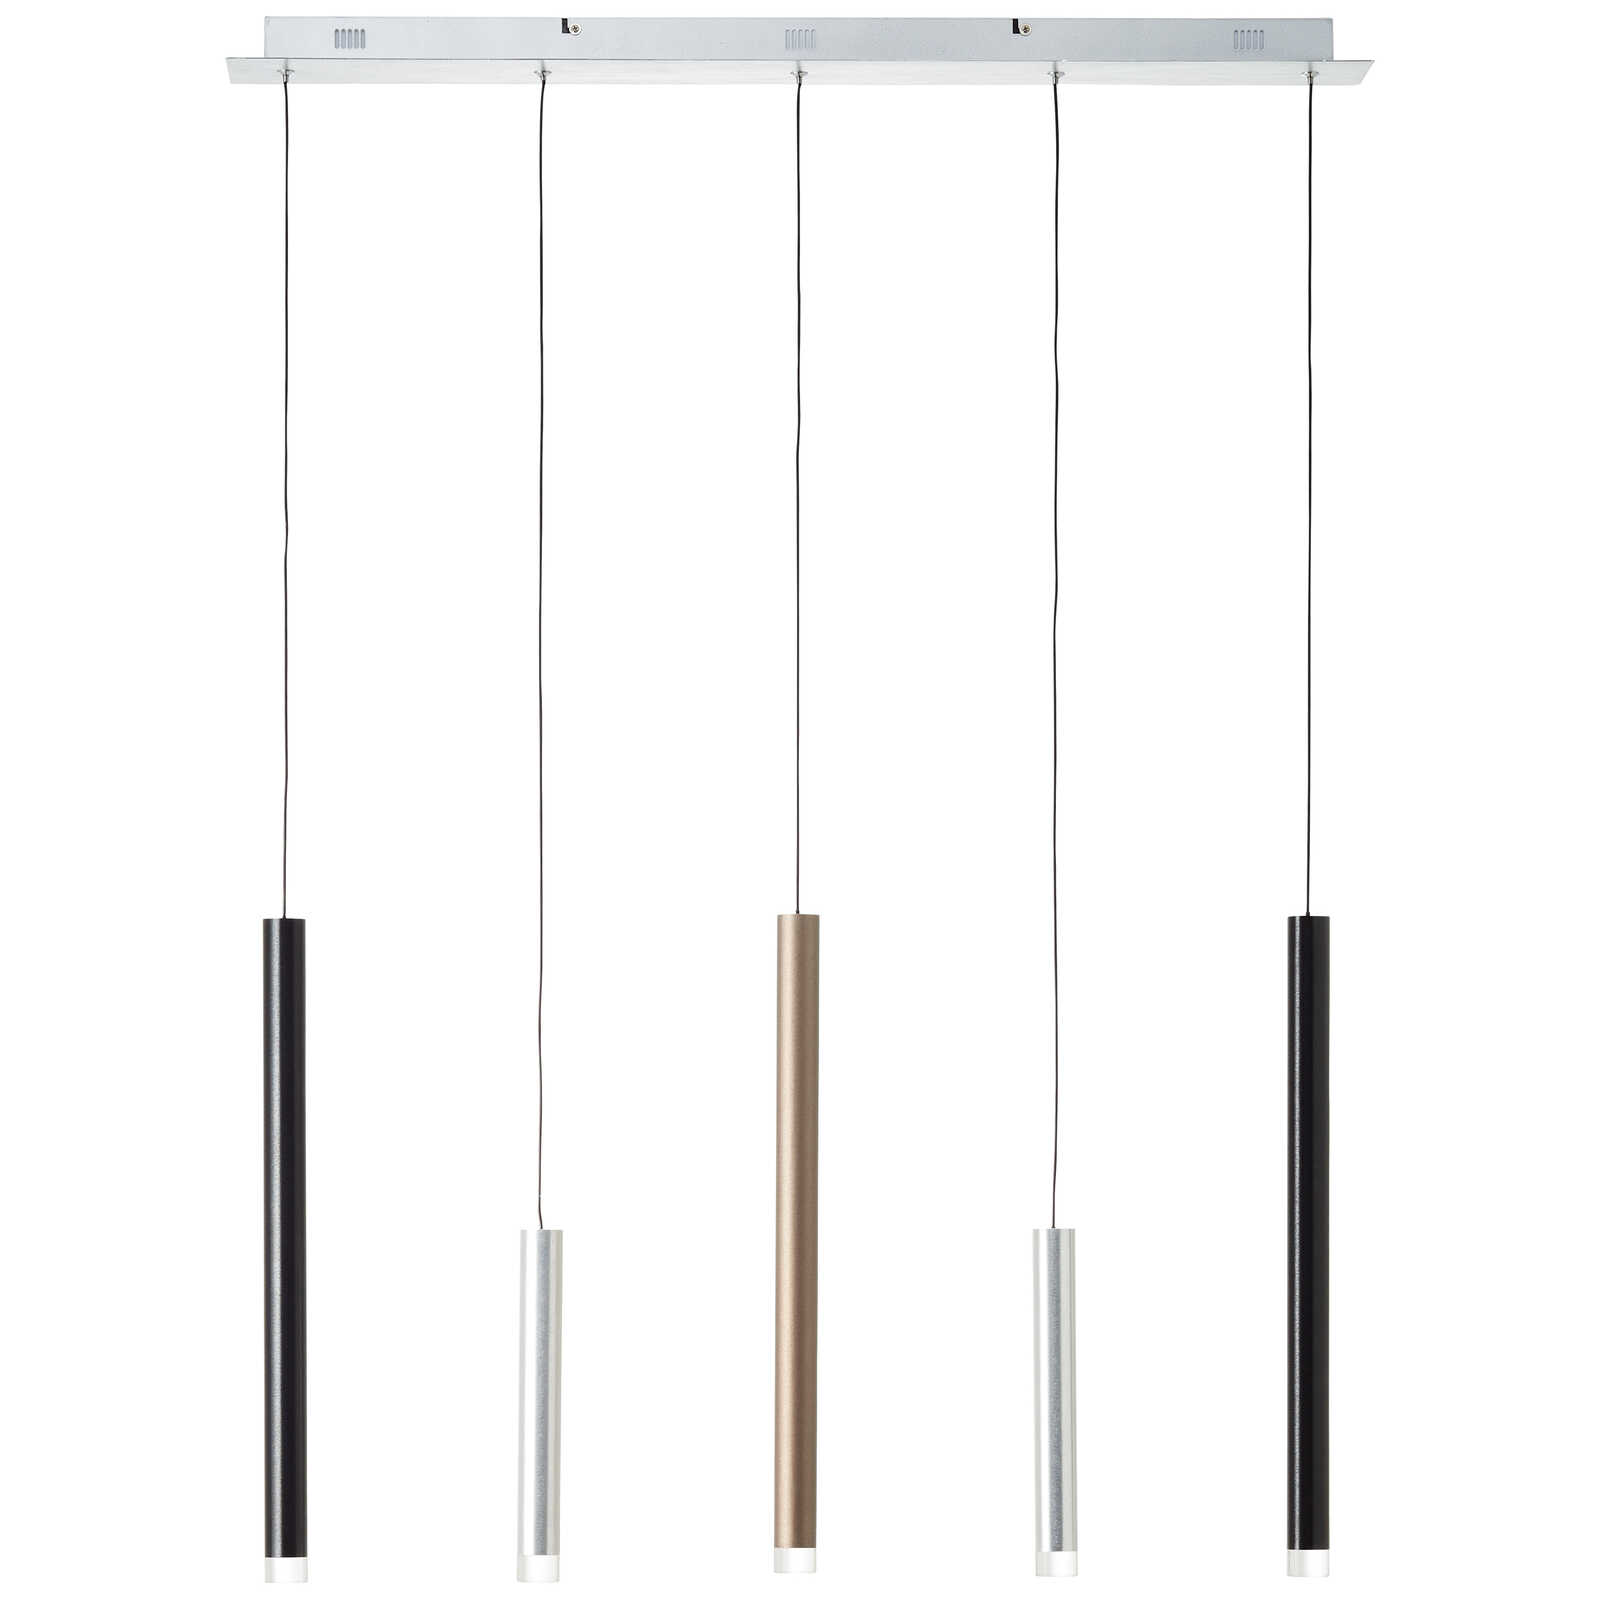             Metalen hanglamp - Eddy 3 - Bruin
        